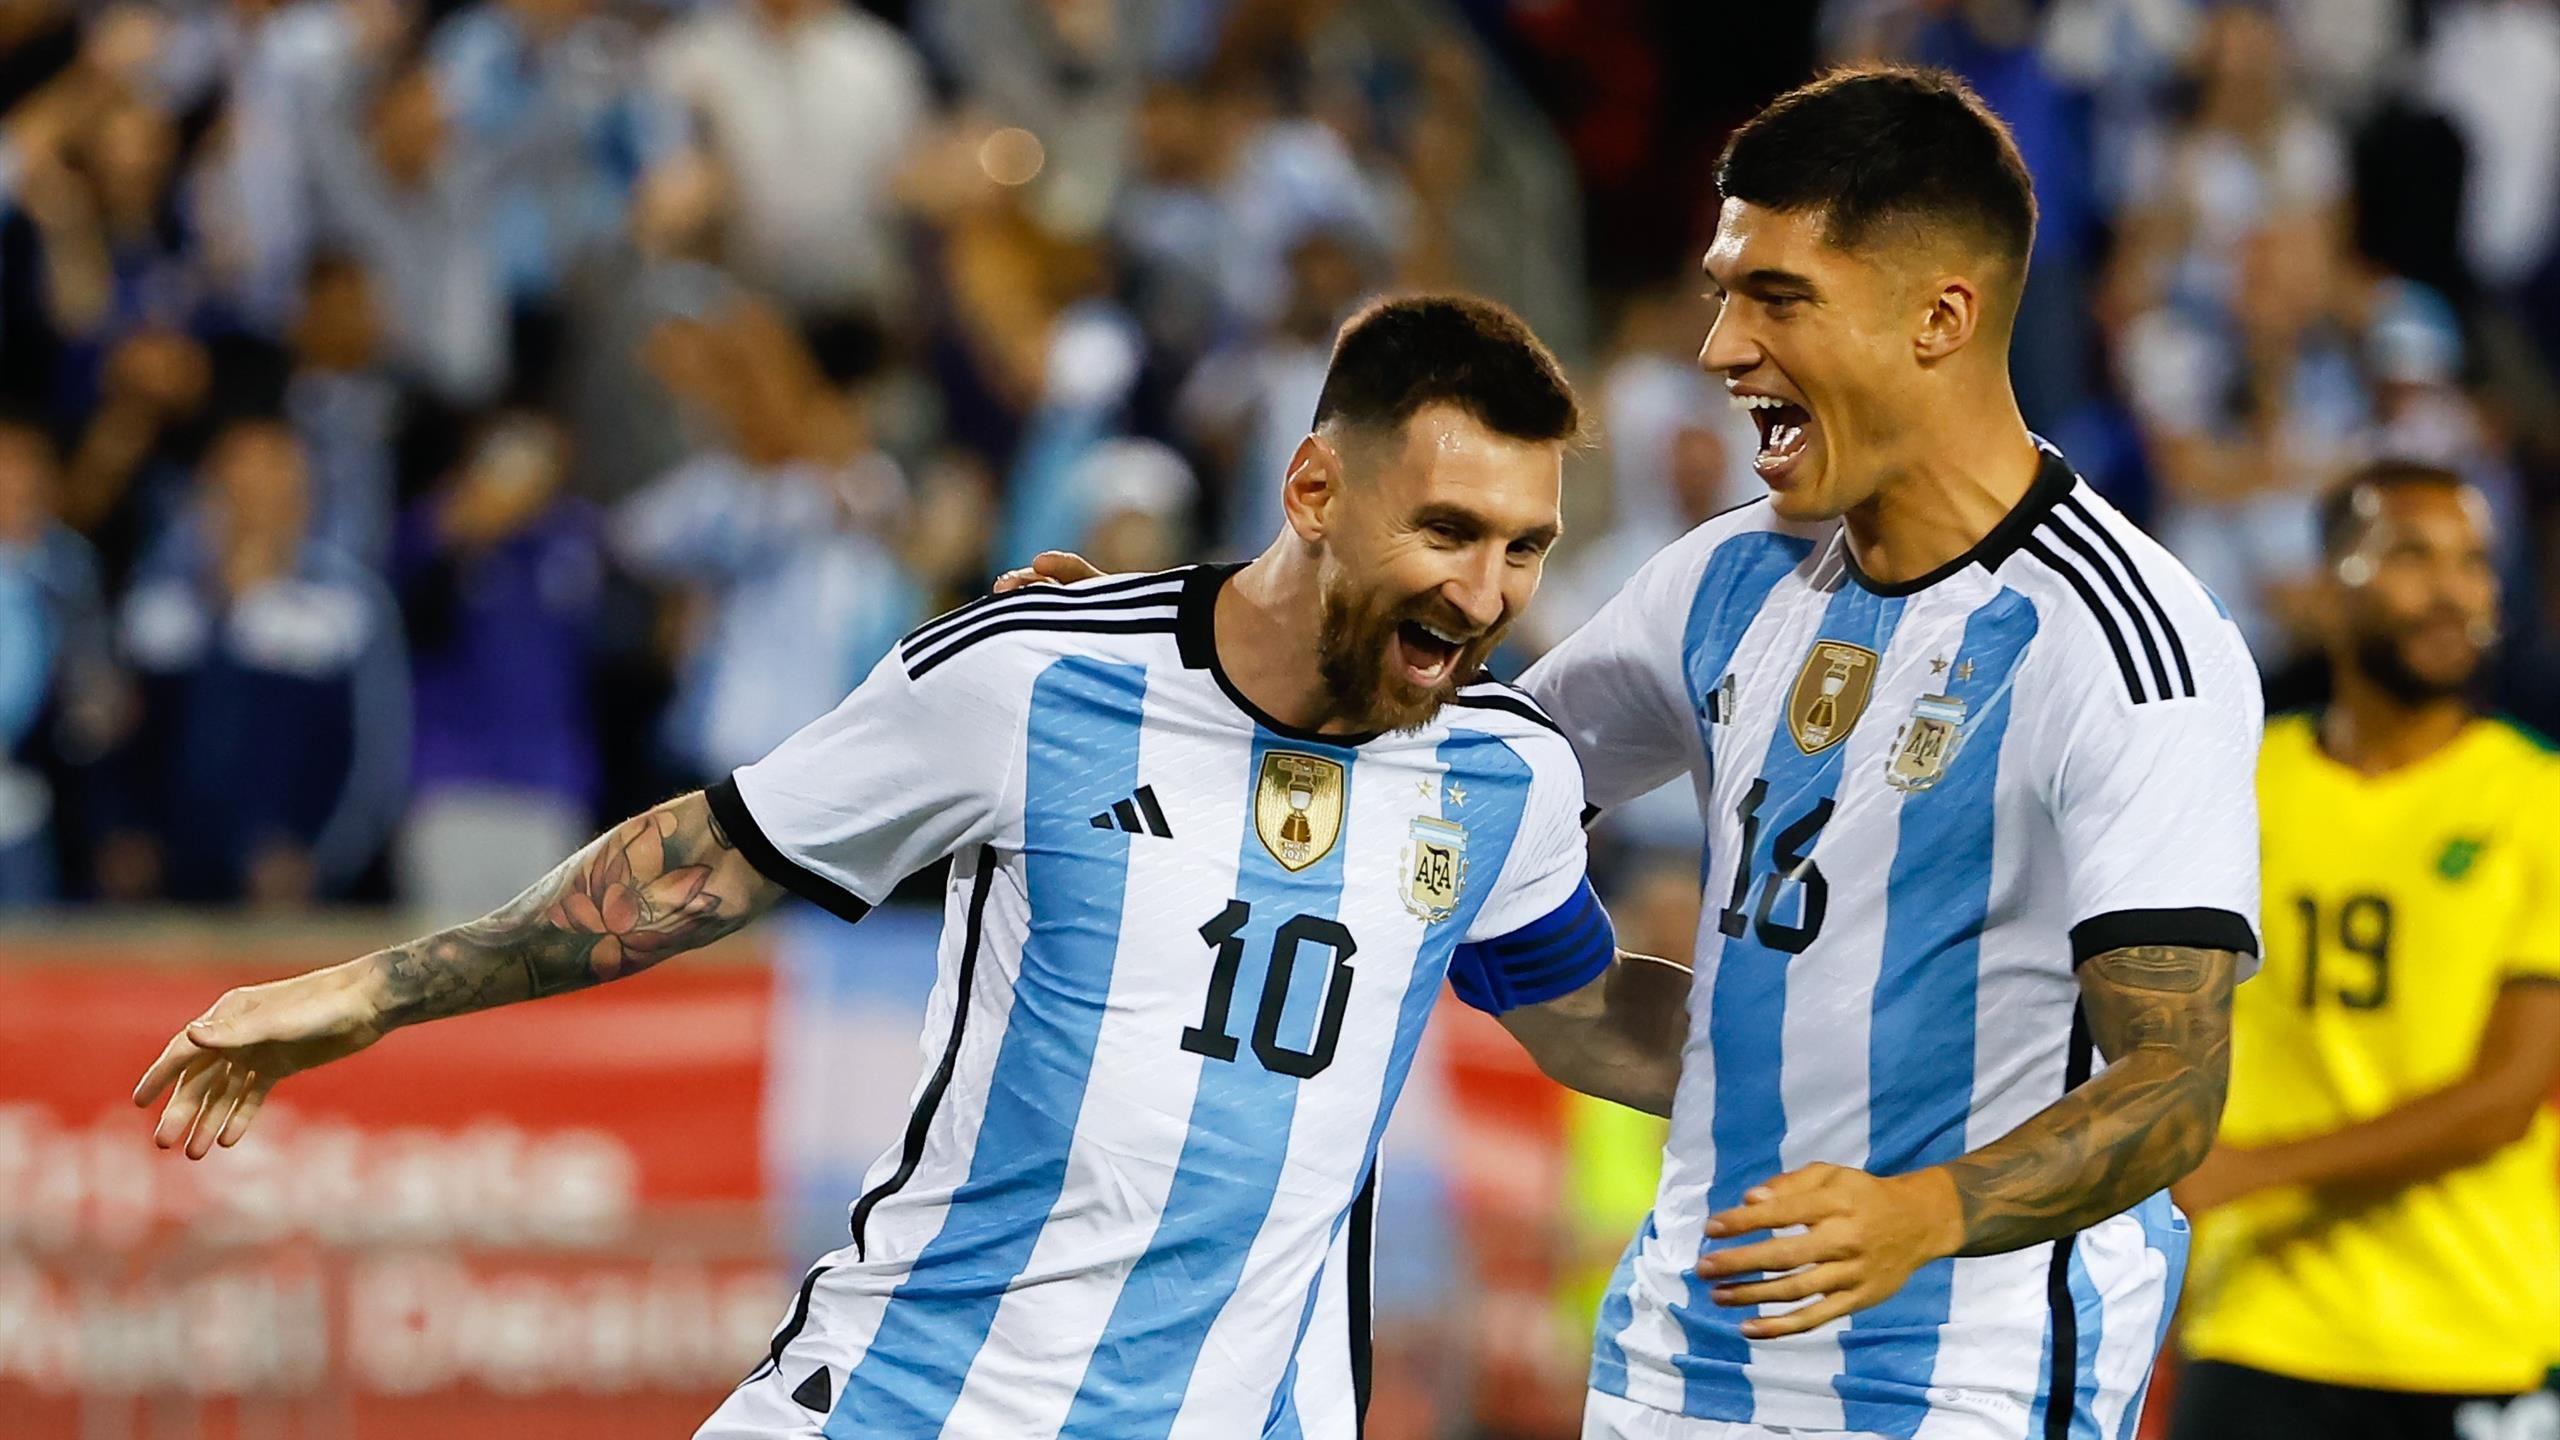 Salir chocar Dato VÍDEO | El anuncio de la Selección Argentina para el Mundial que se ha  hecho viral - Eurosport